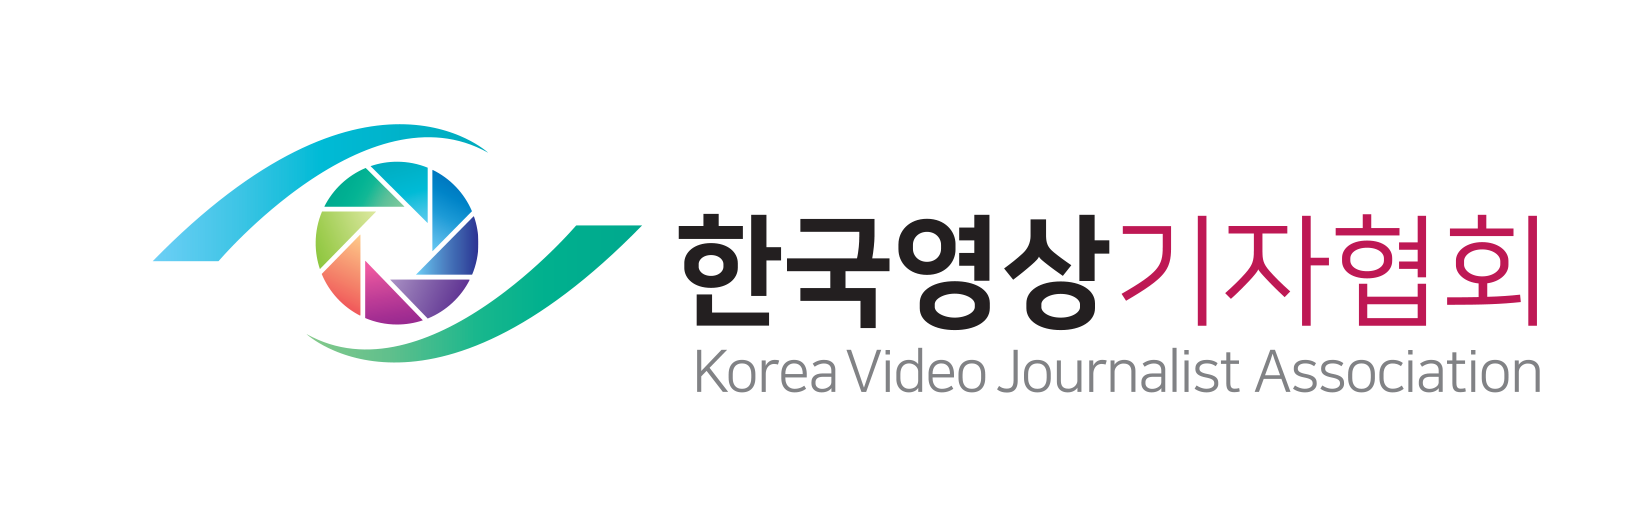 한국영상기자협회 로고 투명.png